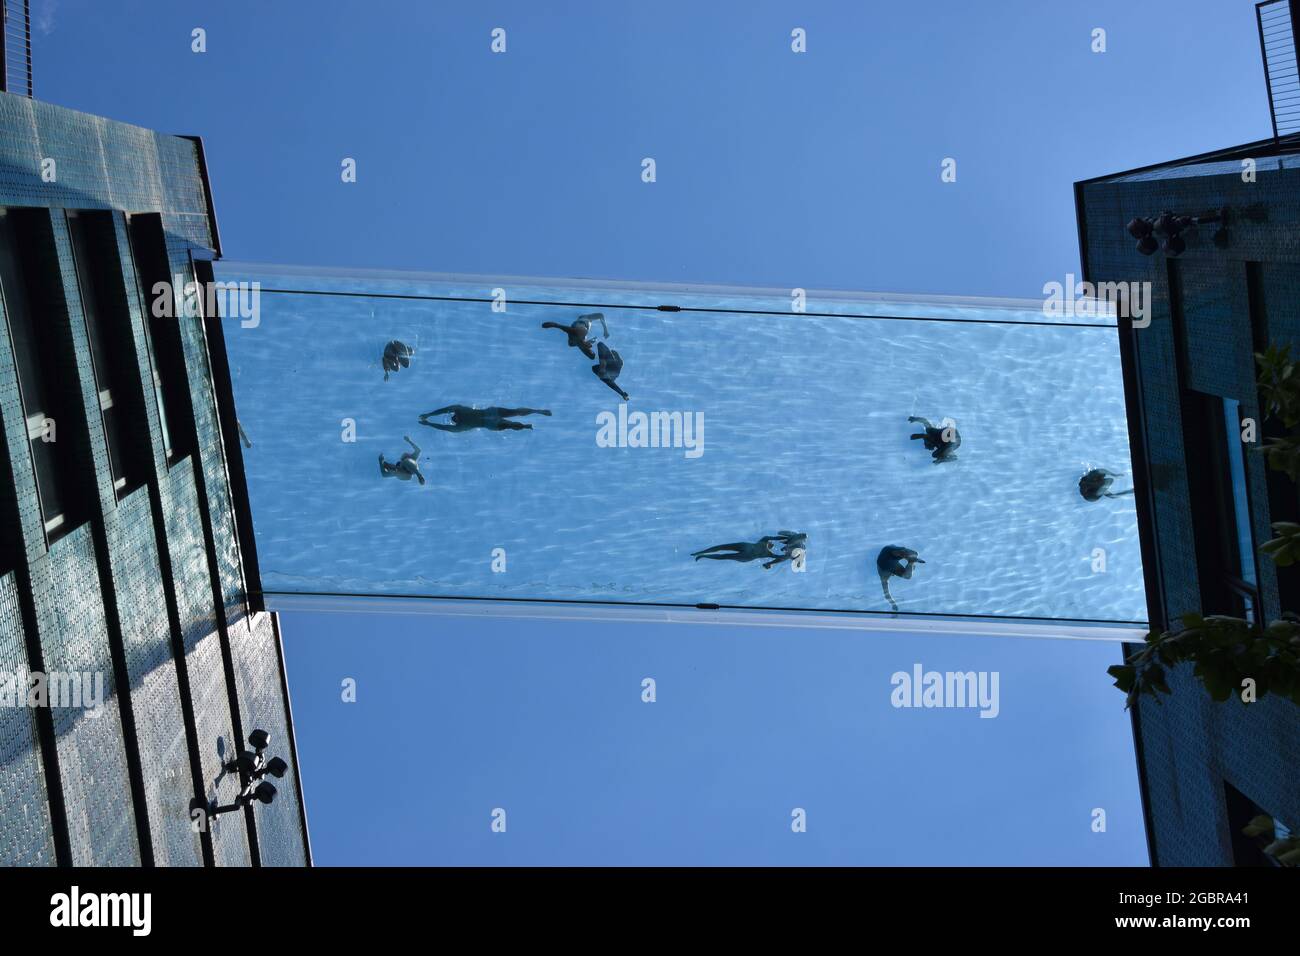 Londres, Royaume-Uni. 5 juin 2021. Personnes dans la nouvelle piscine Sky Pool, une piscine suspendue à 35 mètres au-dessus du sol entre deux immeubles d'appartements à côté de l'ambassade américaine dans neuf Elms. Considéré comme la première piscine du genre au monde, il est ouvert aux résidents seulement. Banque D'Images